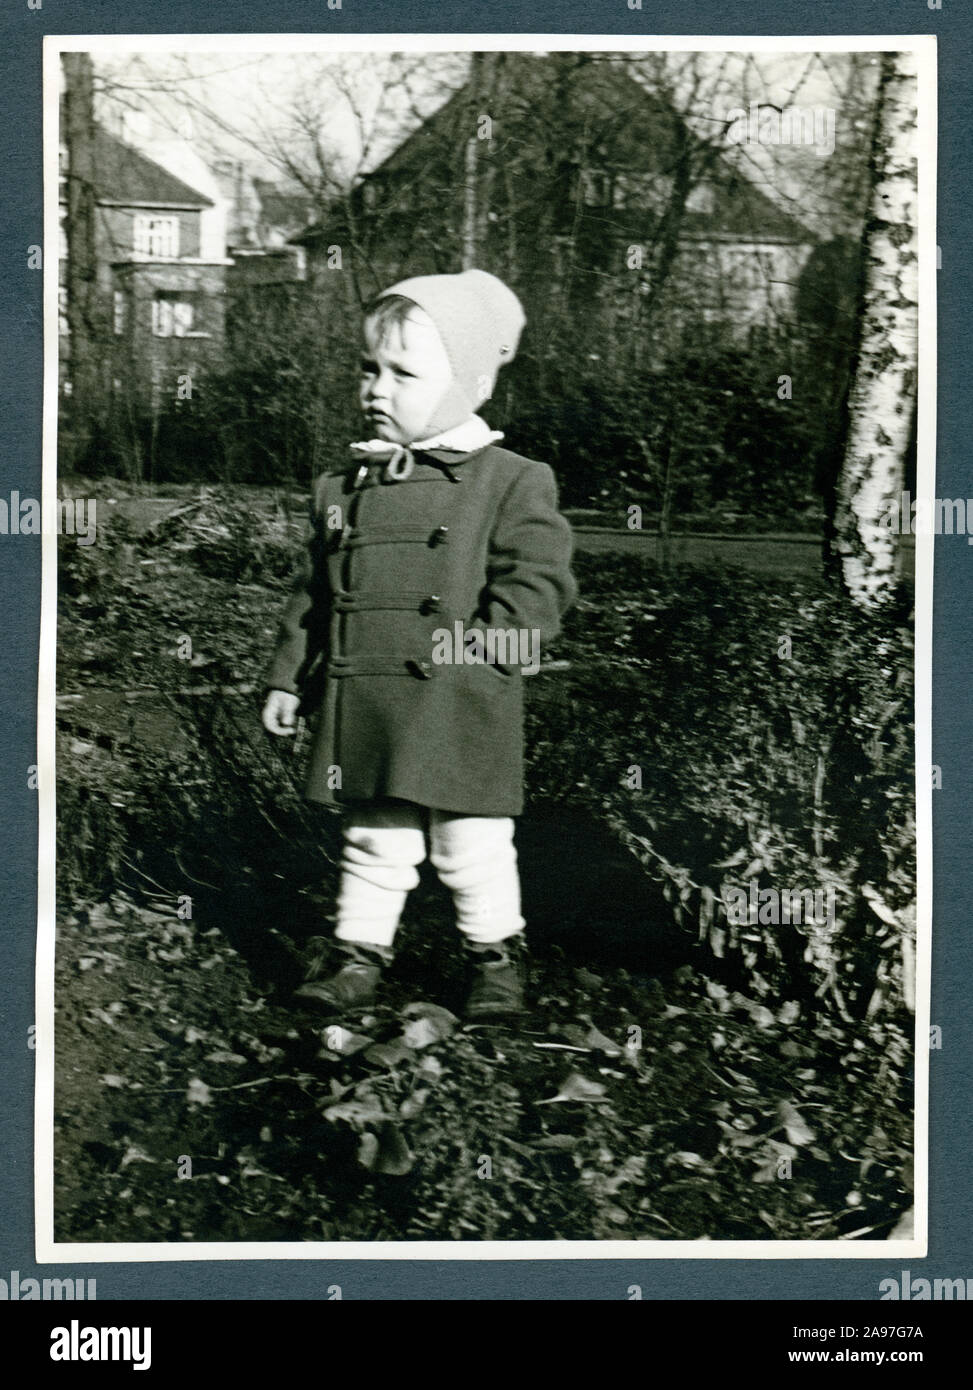 Europa, Deutschland, Hamburg, kleiner Junge im Herbst im Garten , Aufnahme vom November 1955 .  /  Europe, Germany, Hamburg, little boy in autumn times in the garden, photo from November 1955 . Stock Photo